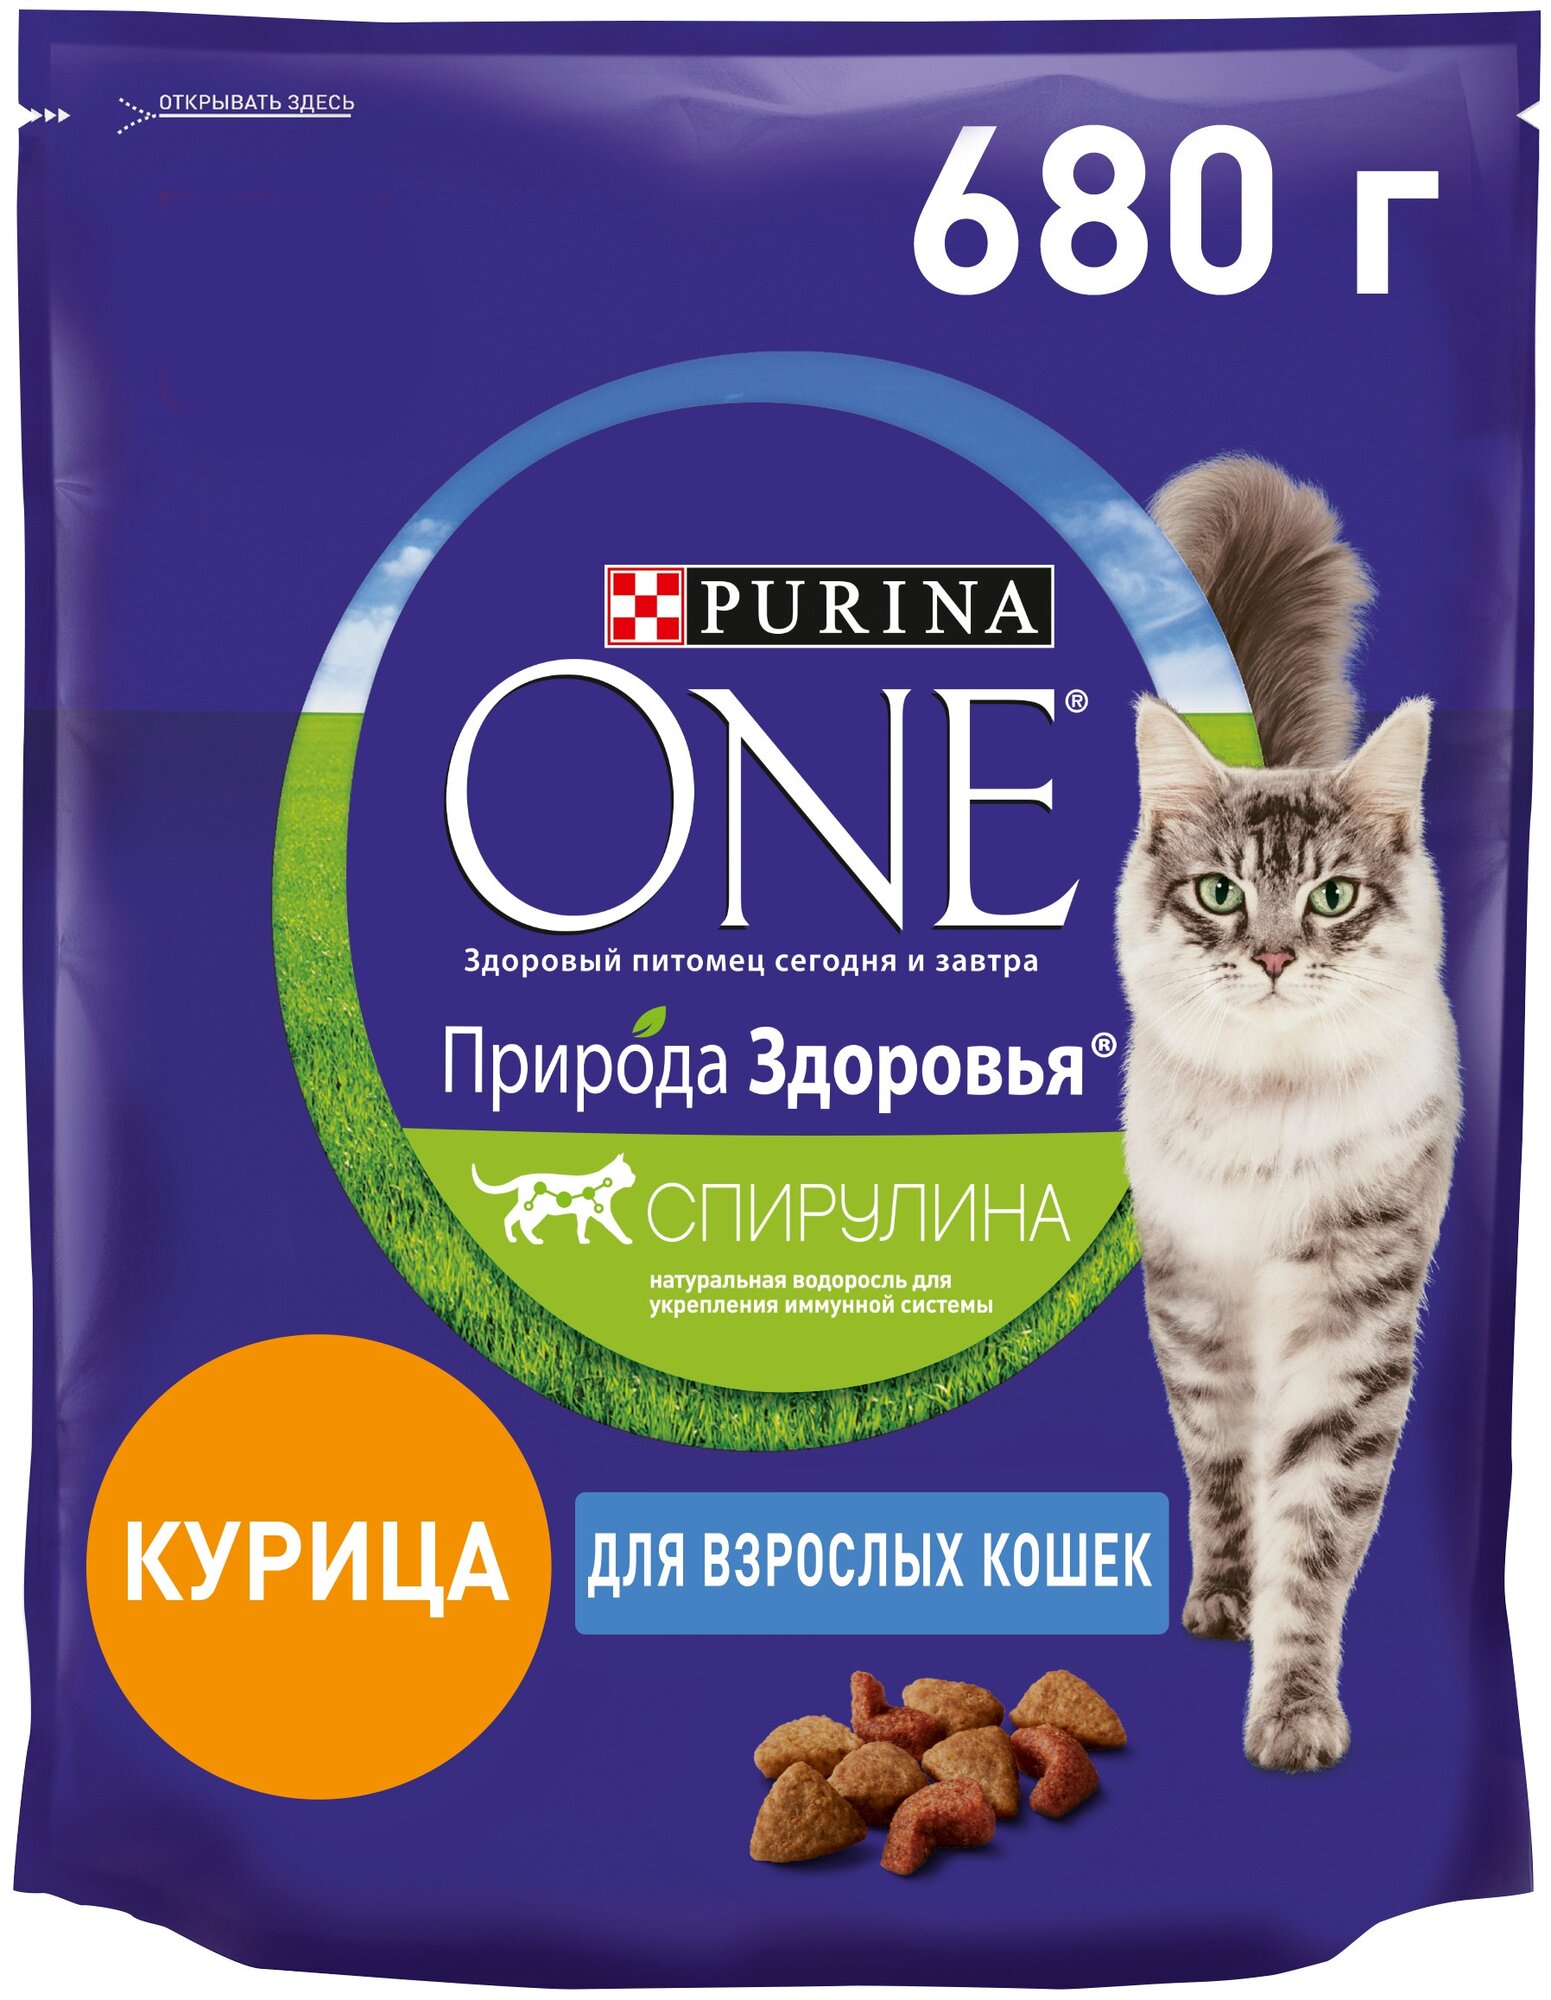 Сухой корм Purina ONE для взрослых кошек, с высоким содержанием курицы, 680гр - фото №1